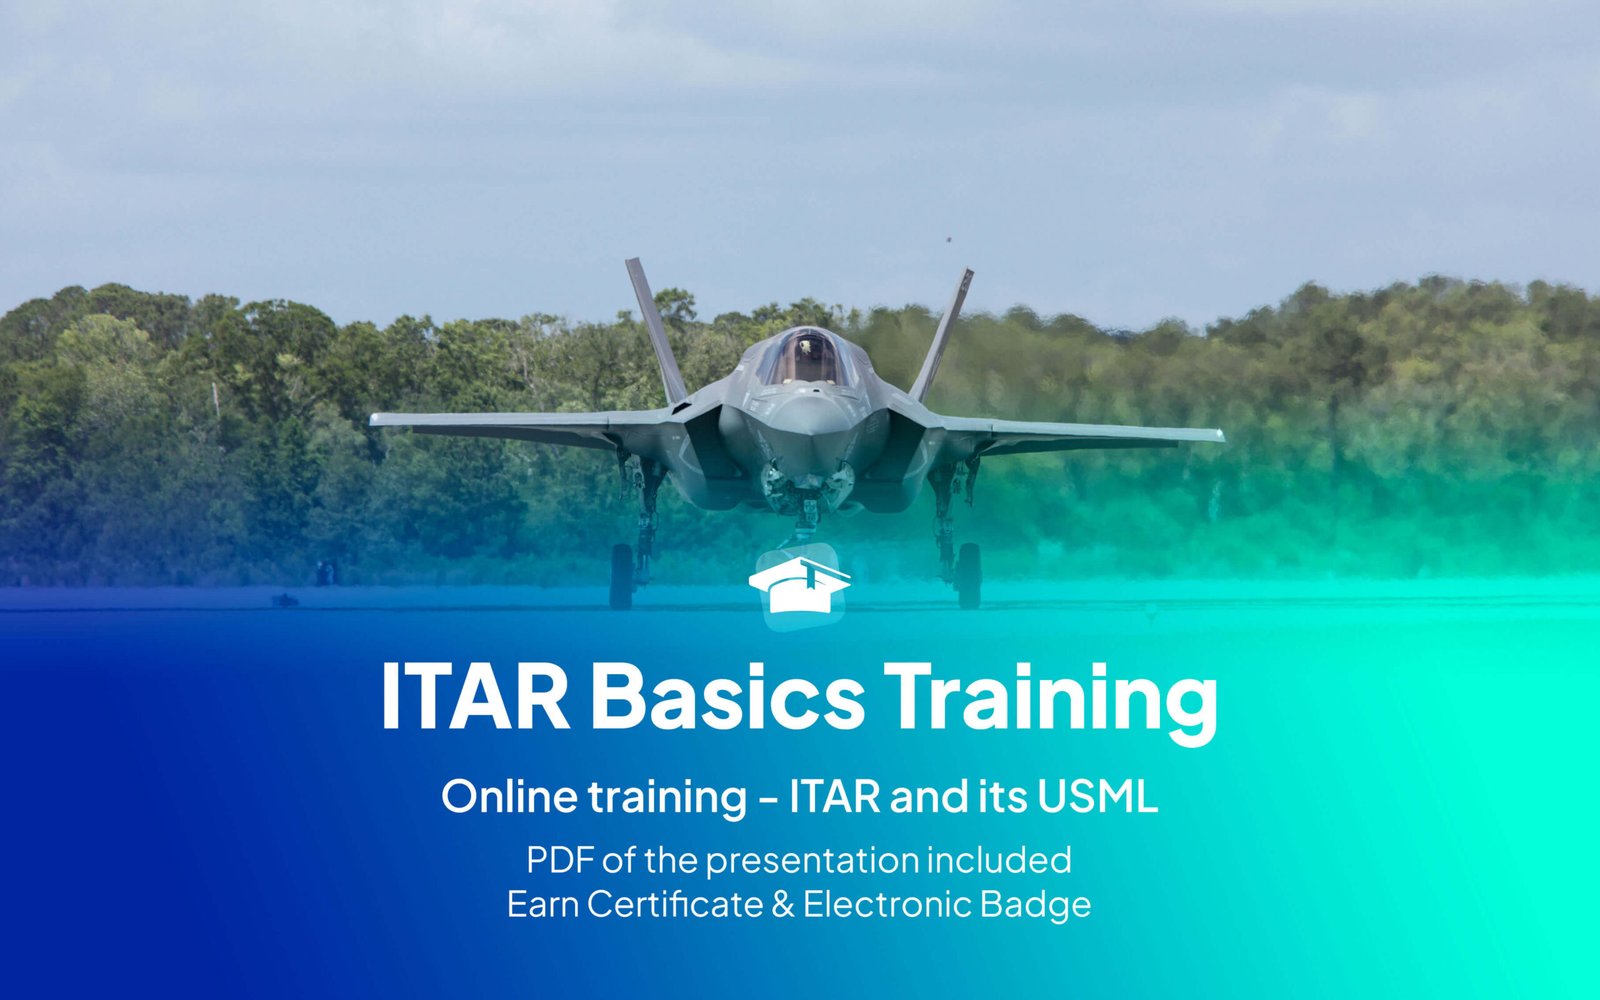 ITAR Basics